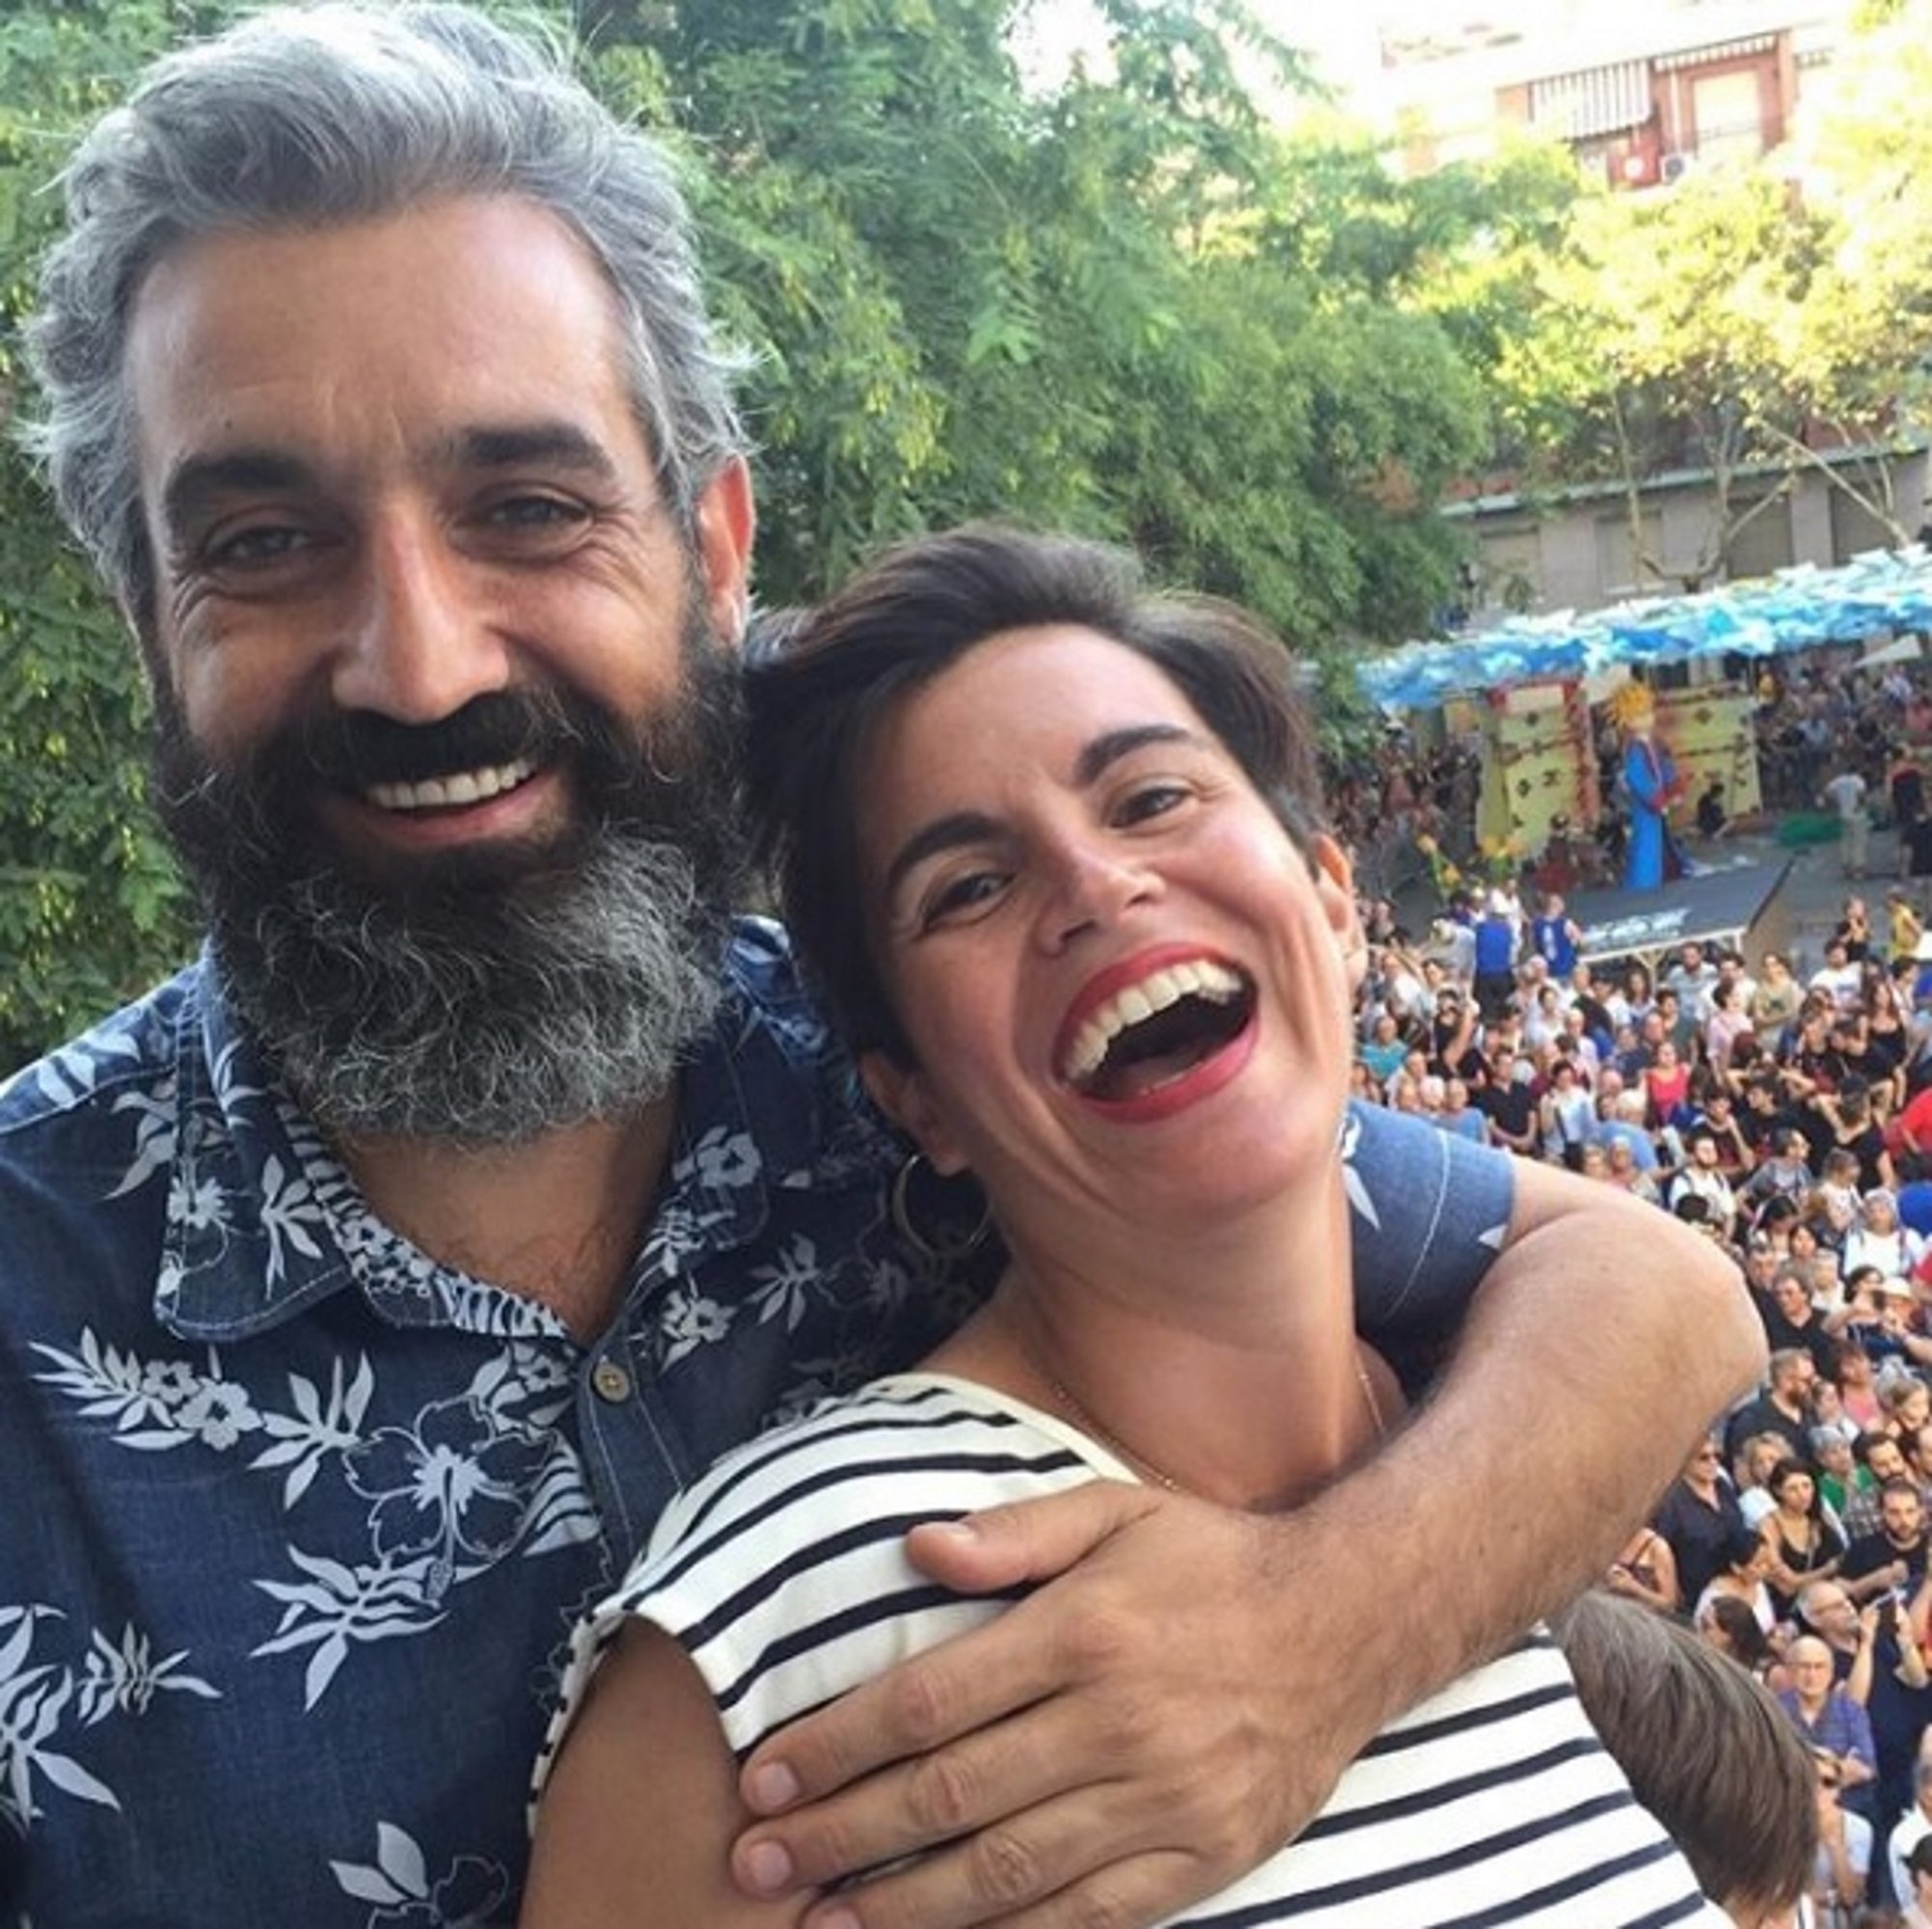 La tierna relación de pareja de Roger de Gràcia y Agnès Busquets